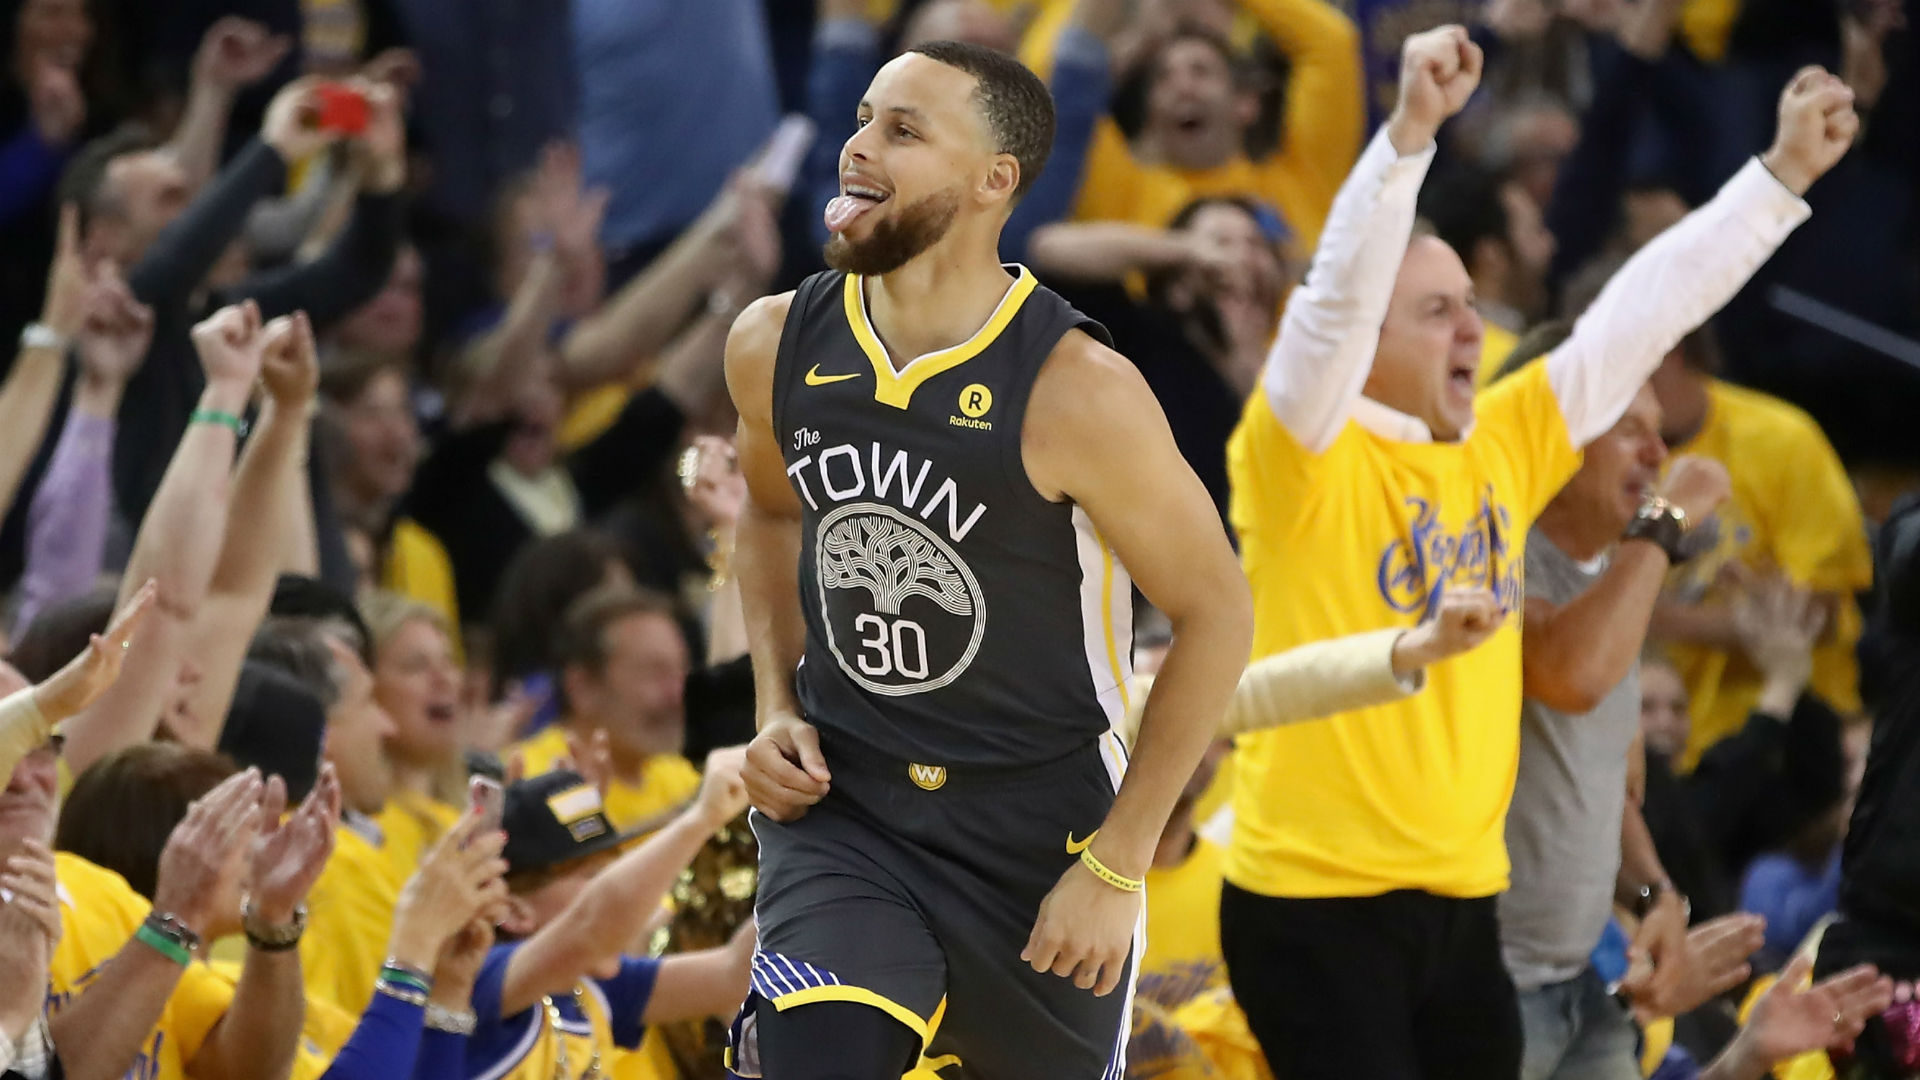 NBA playoffs 2018: Warriors' Stephen Curry will start Game 3 vs. Pelicans | NBA ...1920 x 1080